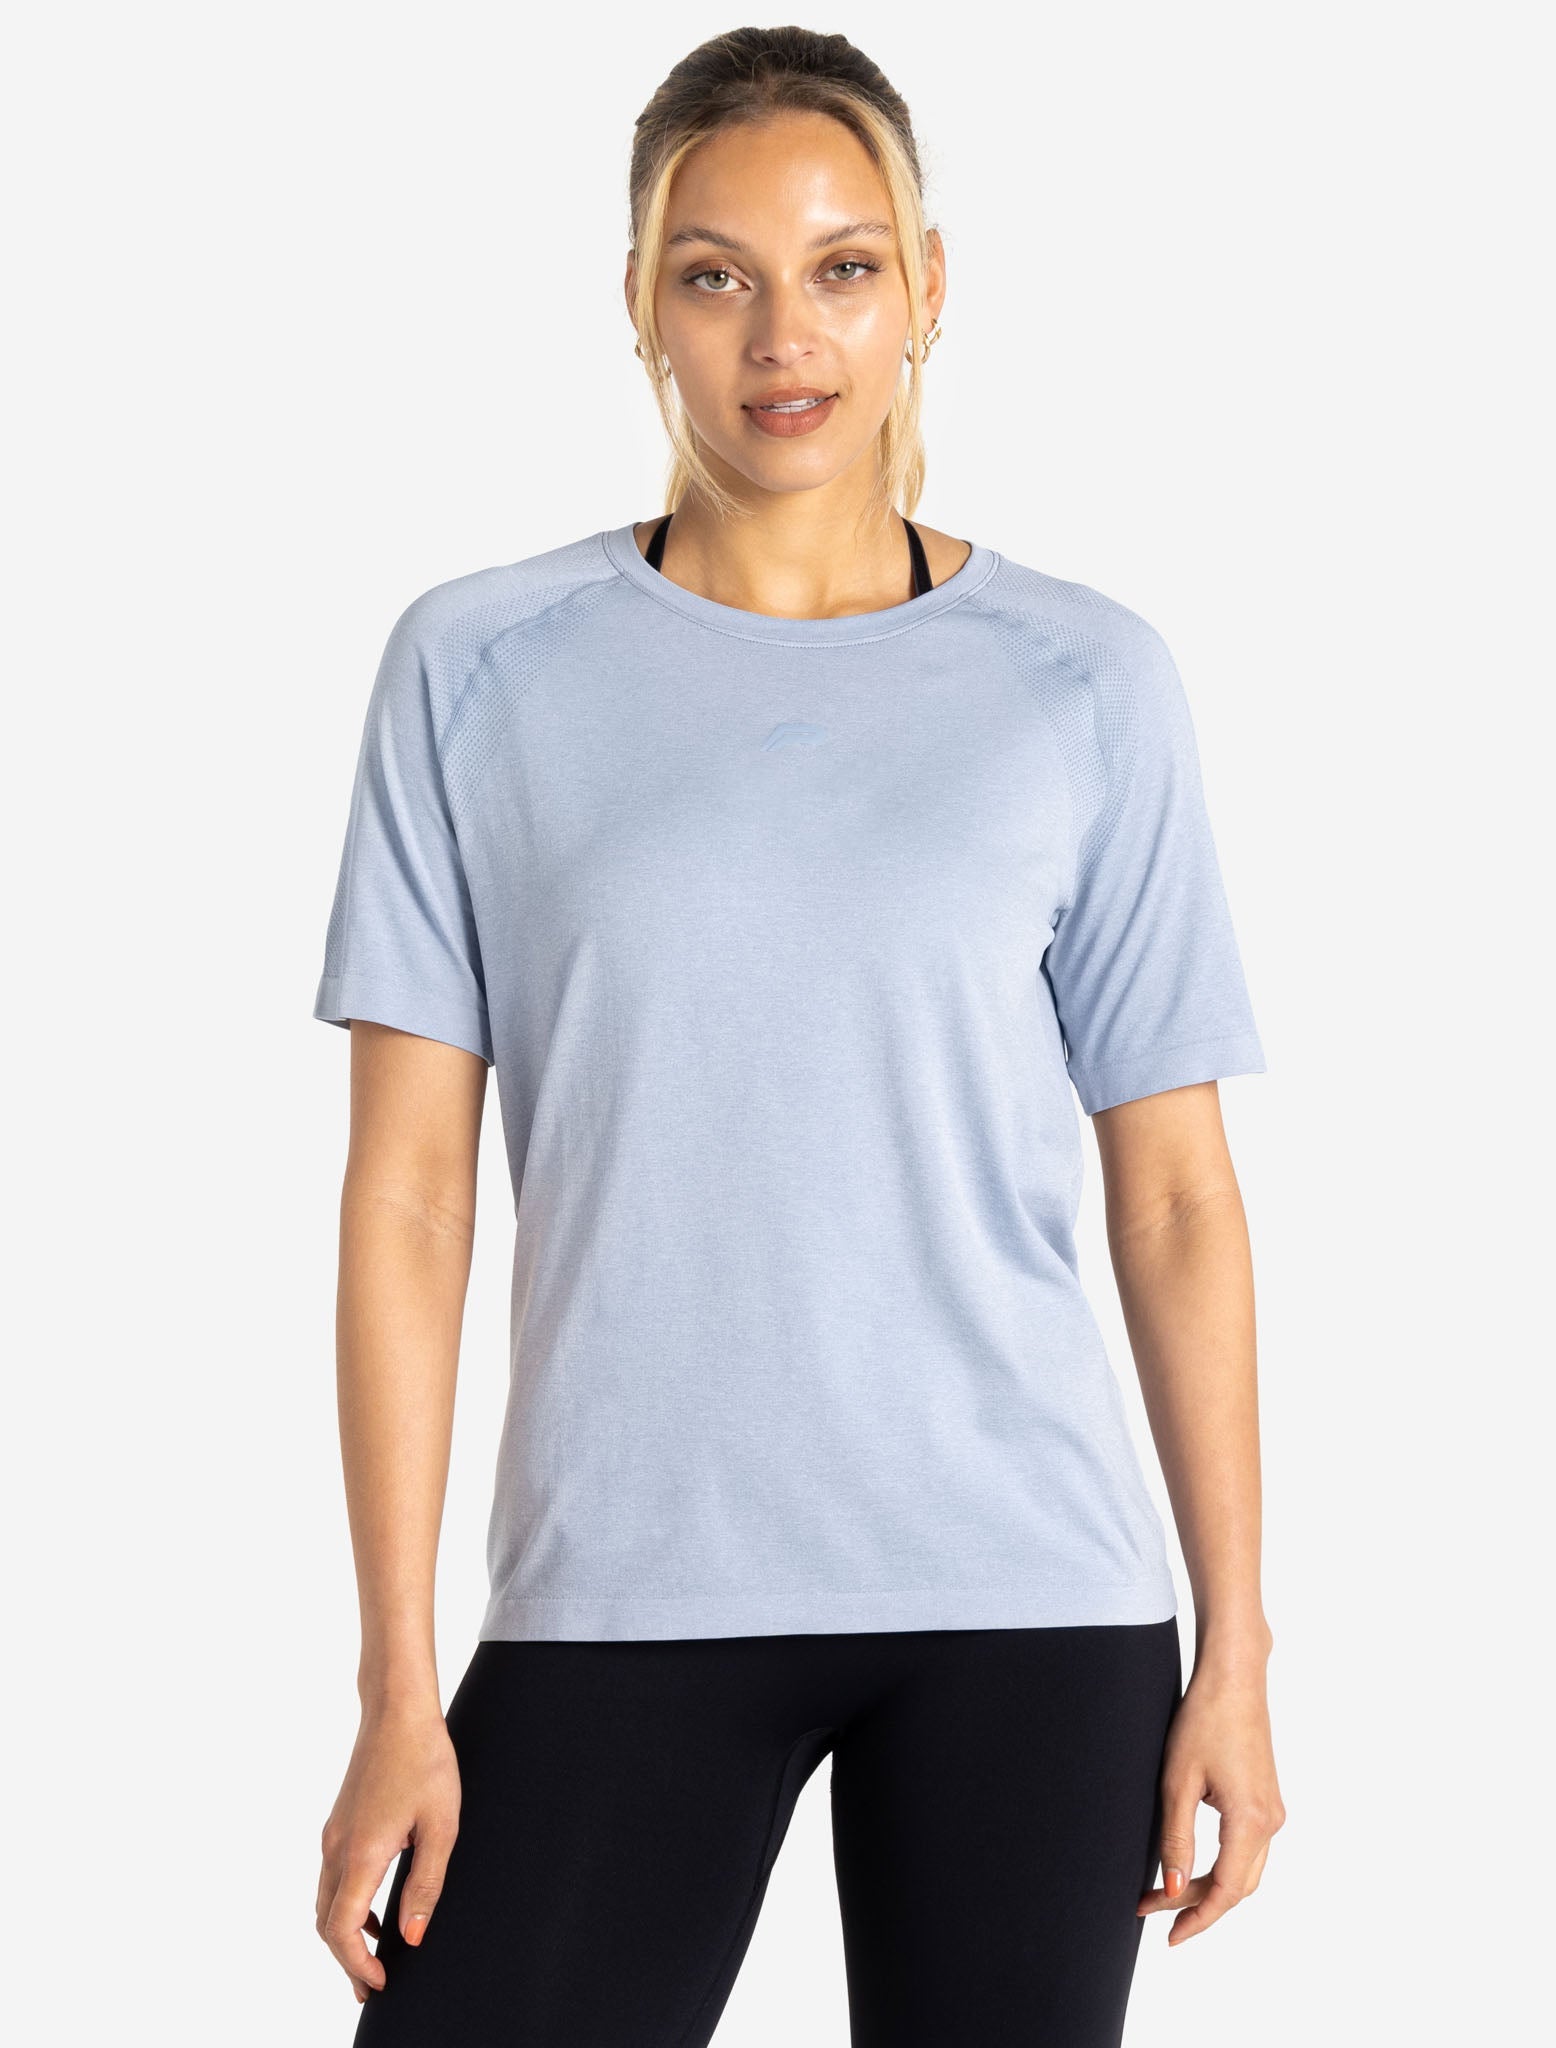 Seamless T-Shirt / Blue Marl Pursue Fitness 1